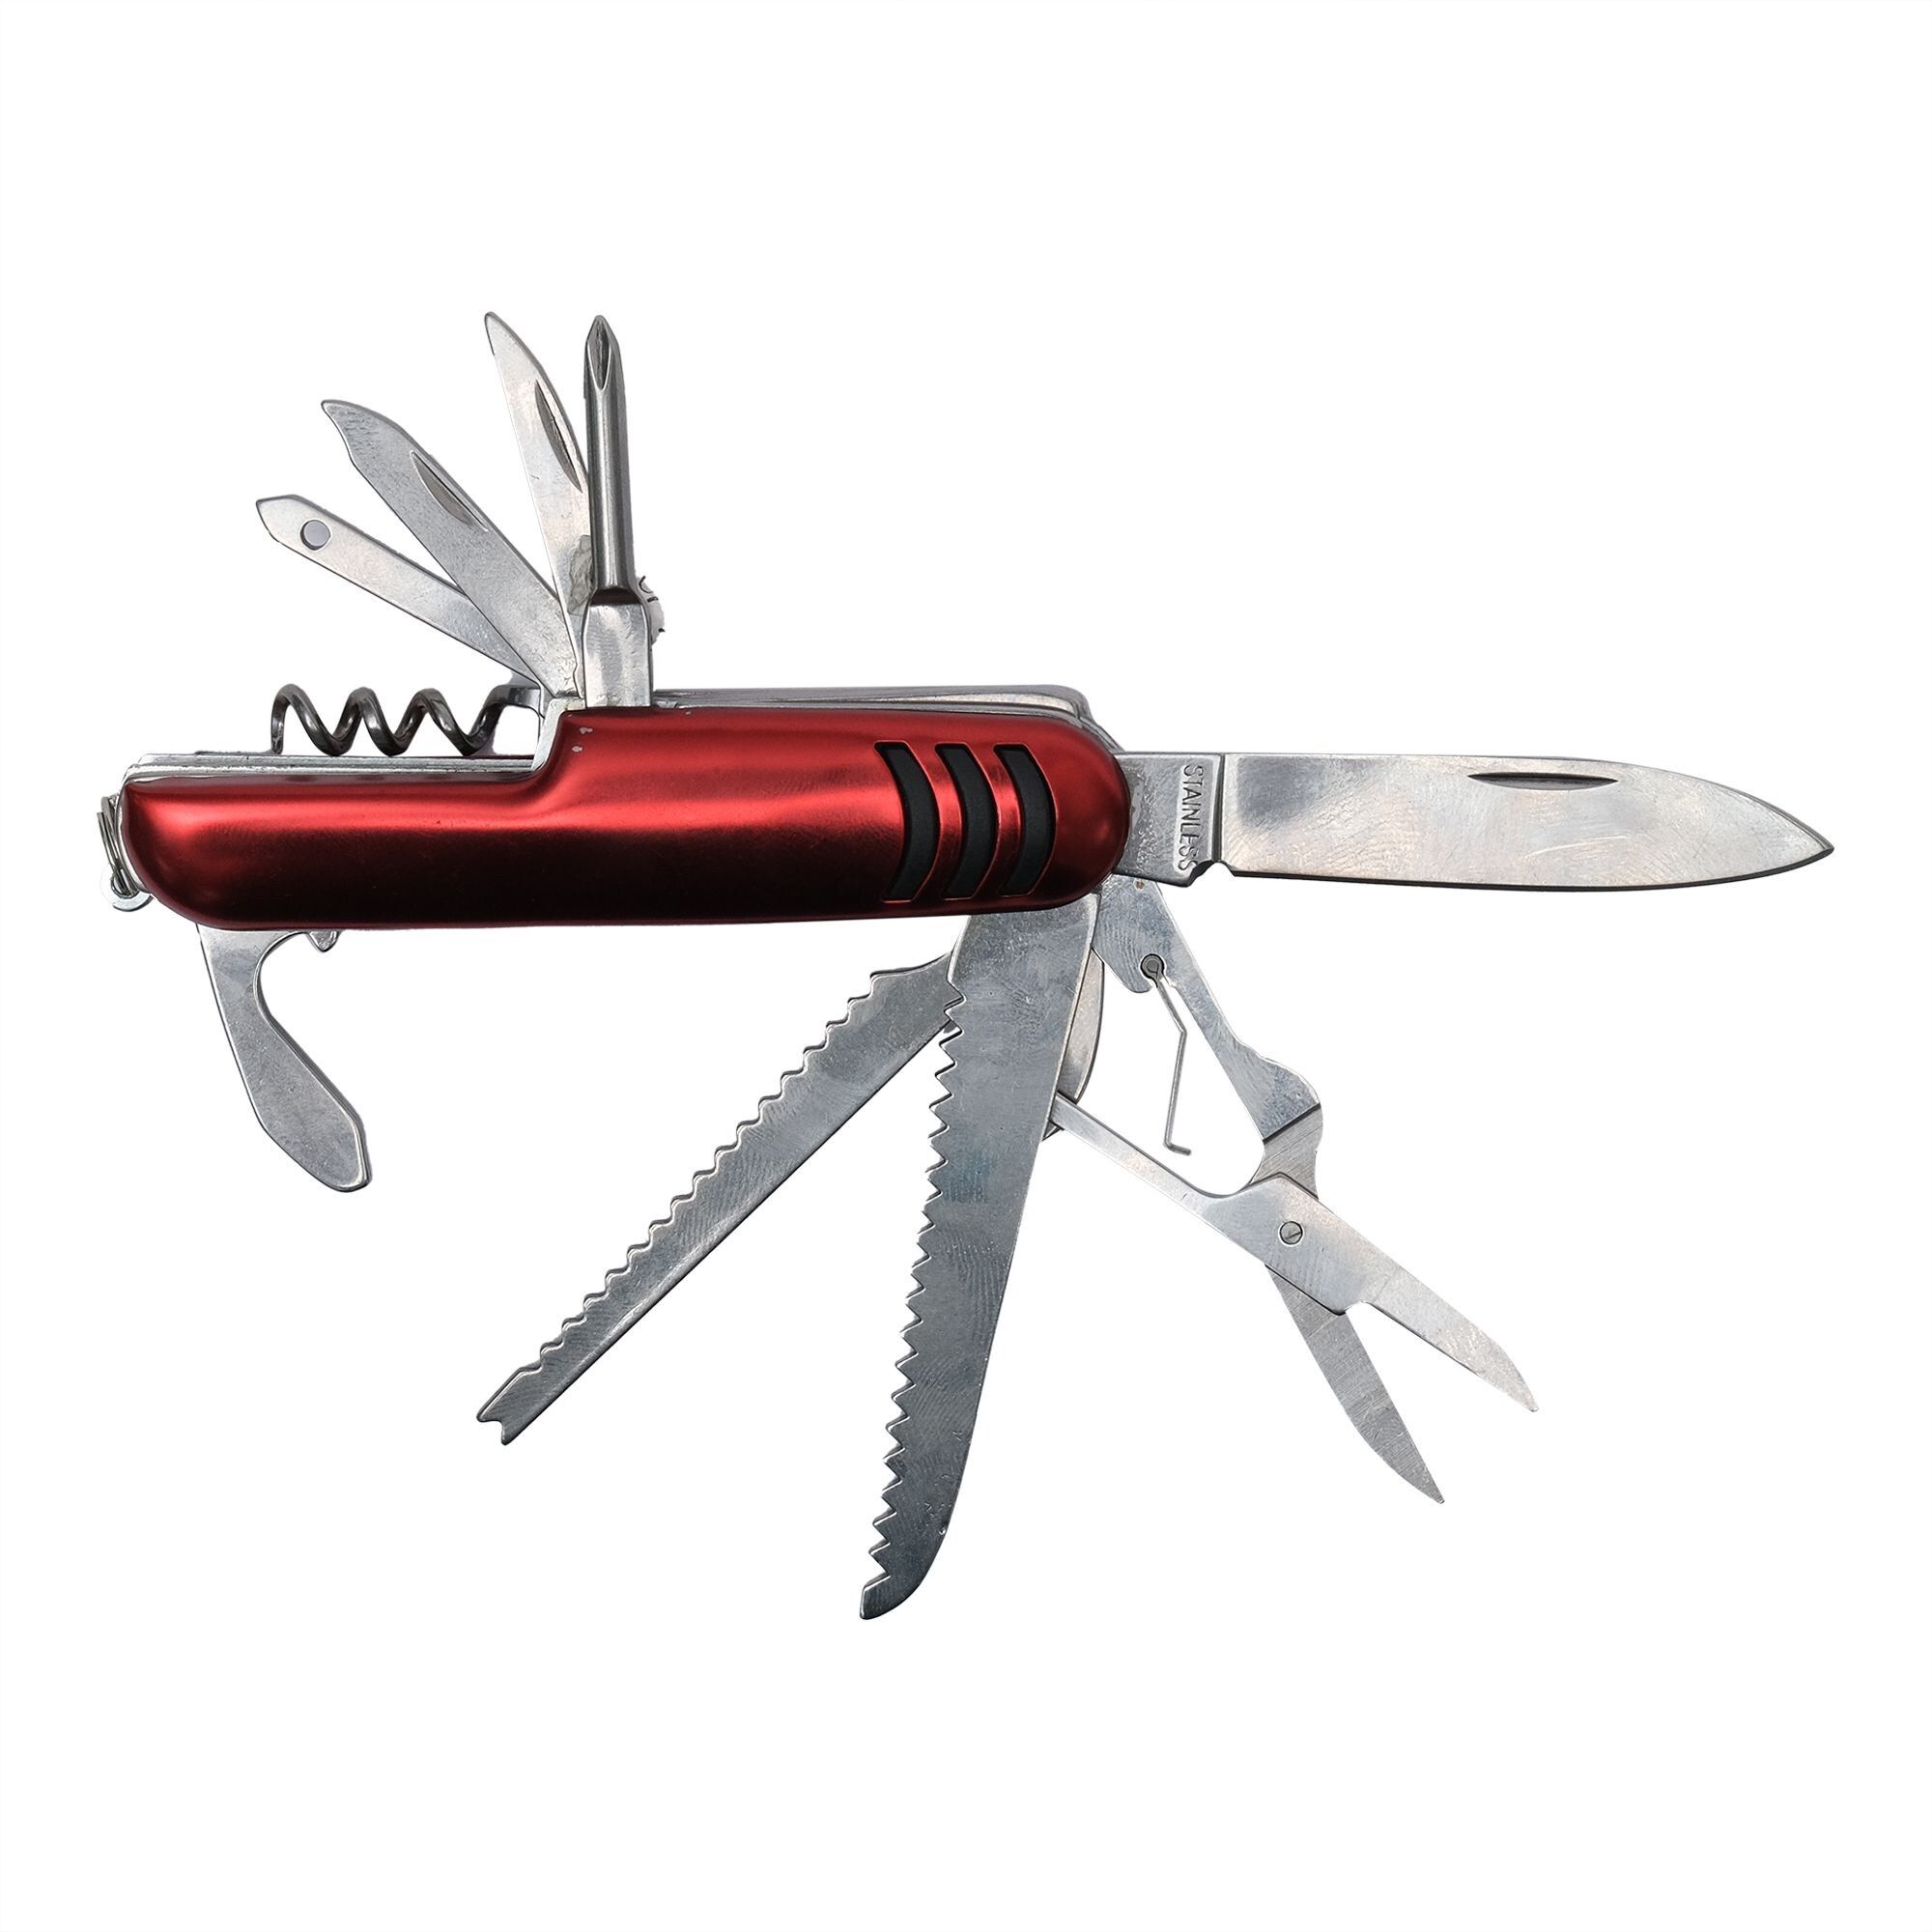 Robustline Multi Function Pocket Knife - Red & Silver